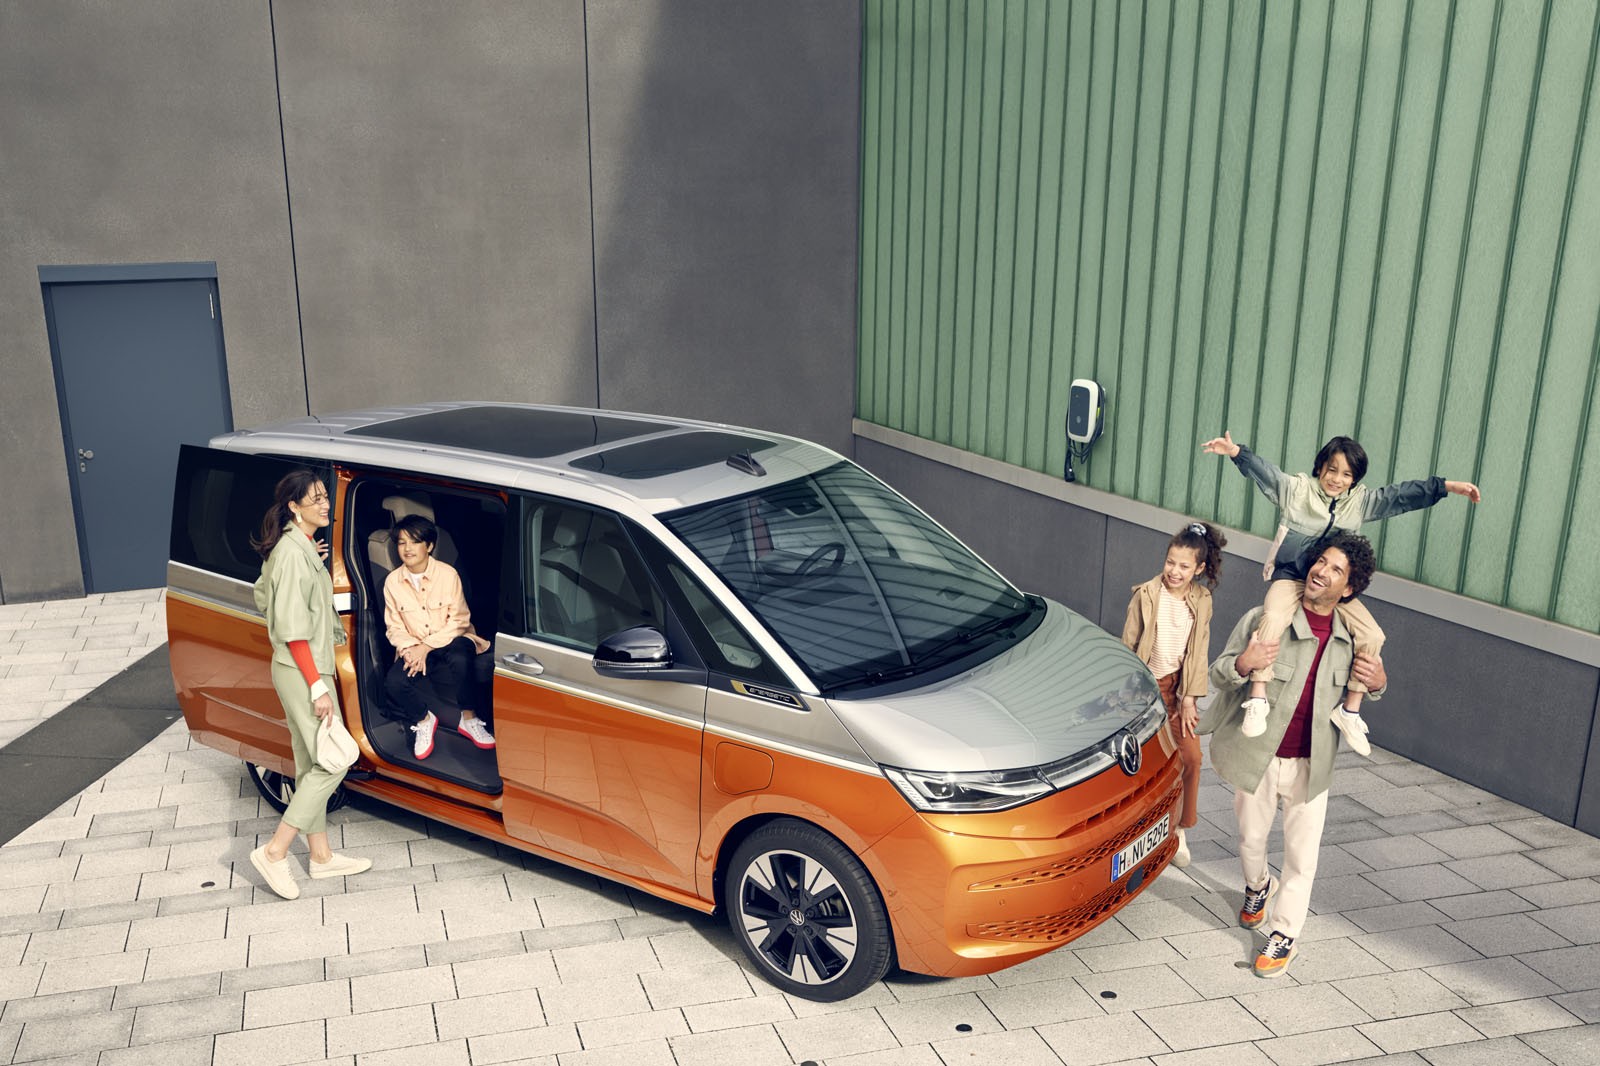 Volkswagen Коммерческие автомобили: объявлены результаты продаж по итогам 2021 года